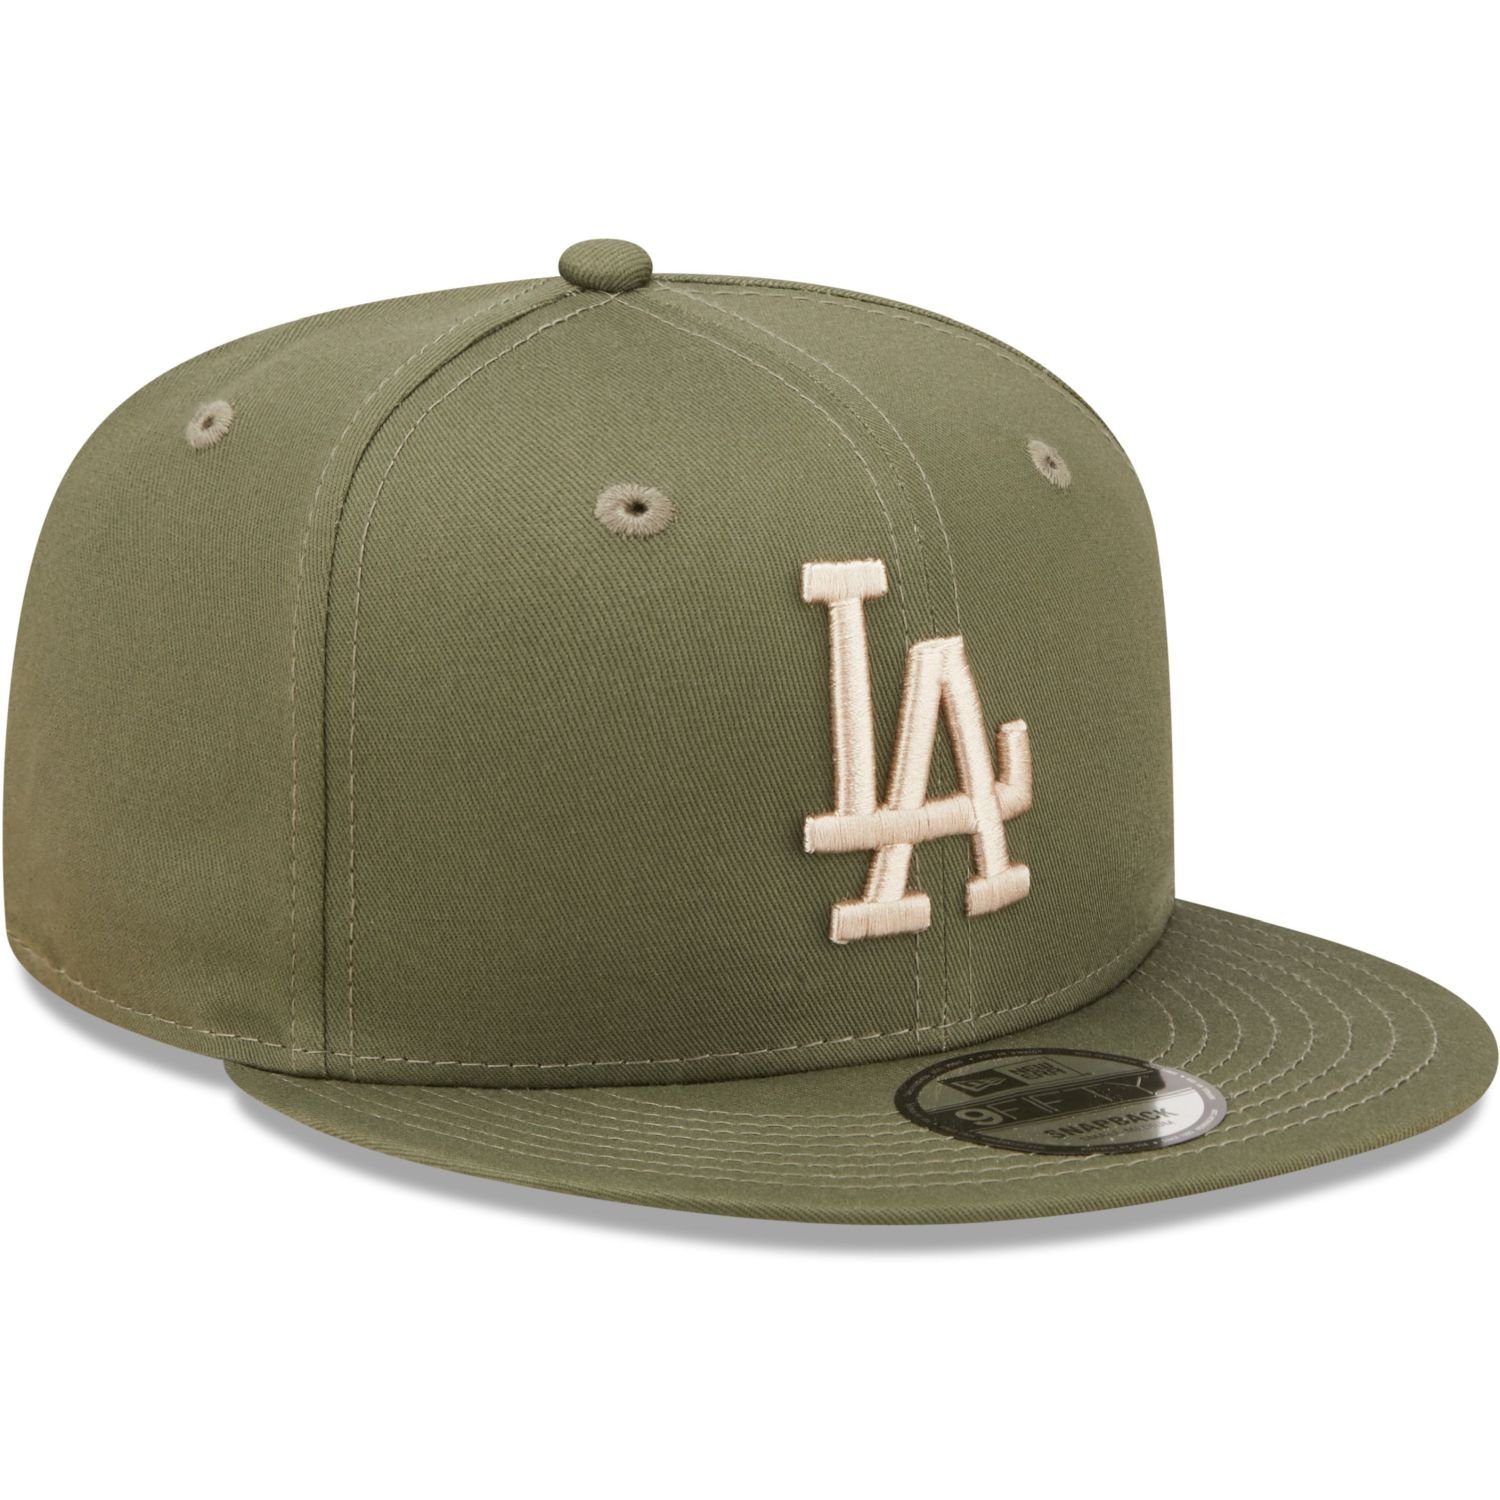 New Cap Los Angeles Dodgers Era 9Fifty Snapback